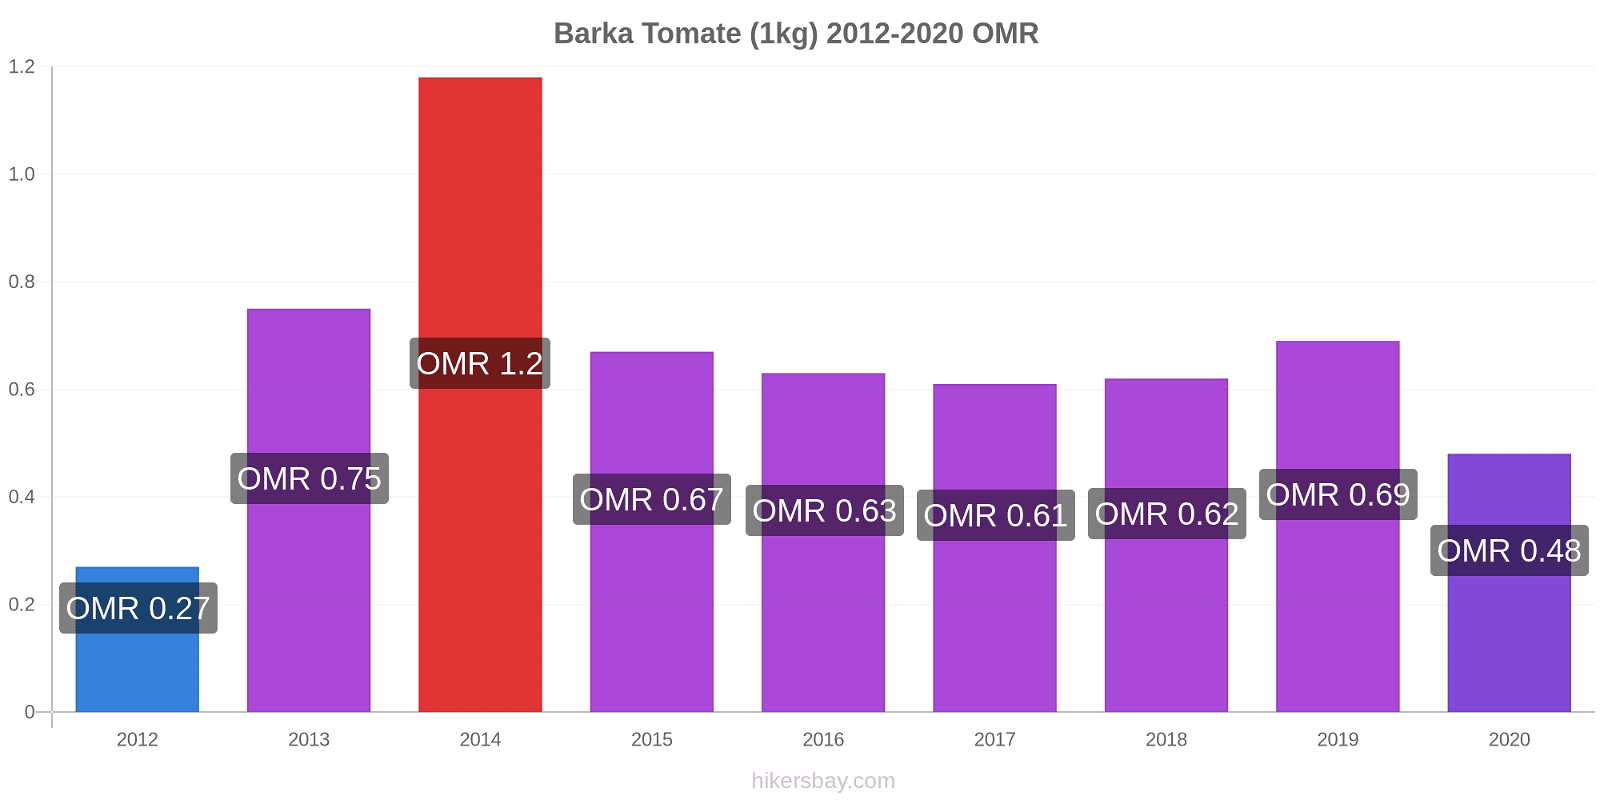 Barka cambios de precios Tomate (1kg) hikersbay.com